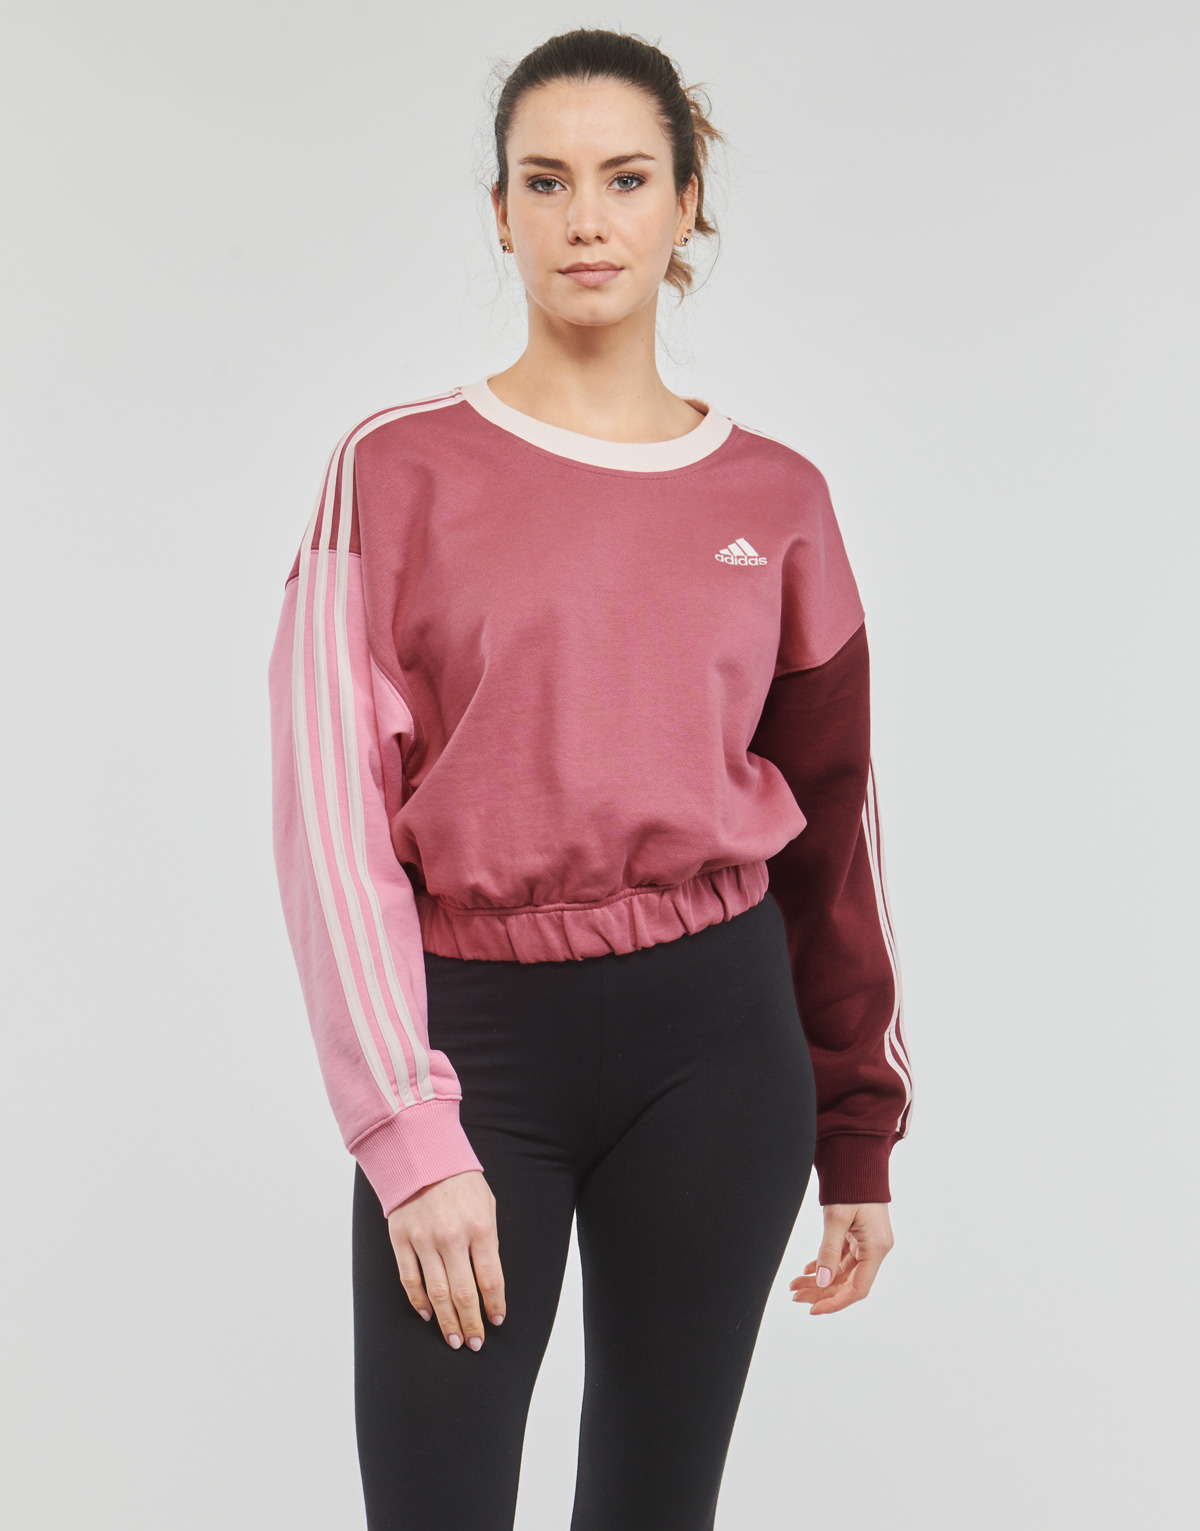 Textiel Dames Sweaters / Sweatshirts Adidas Sportswear 3S CR SWT Bordeau / Roze